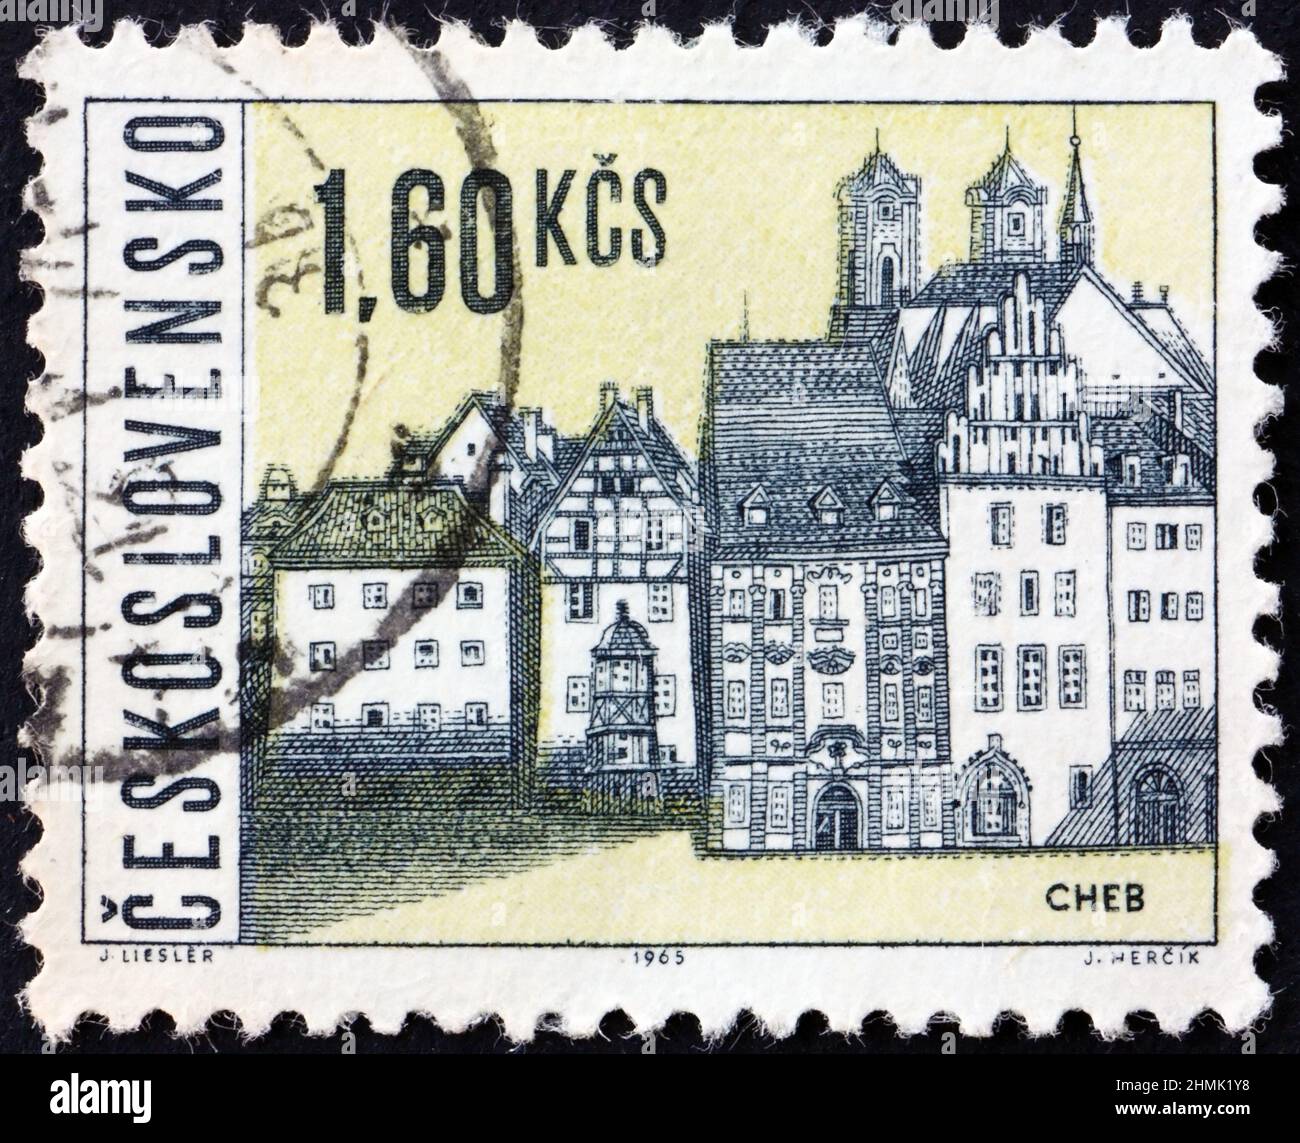 CECOSLOVACCHIA - CIRCA 1965: Un francobollo stampato in Cecoslovacchia mostra la vista di Cheb, una città nella regione di Karlovy Vary della Repubblica Ceca, circa 1965 Foto Stock